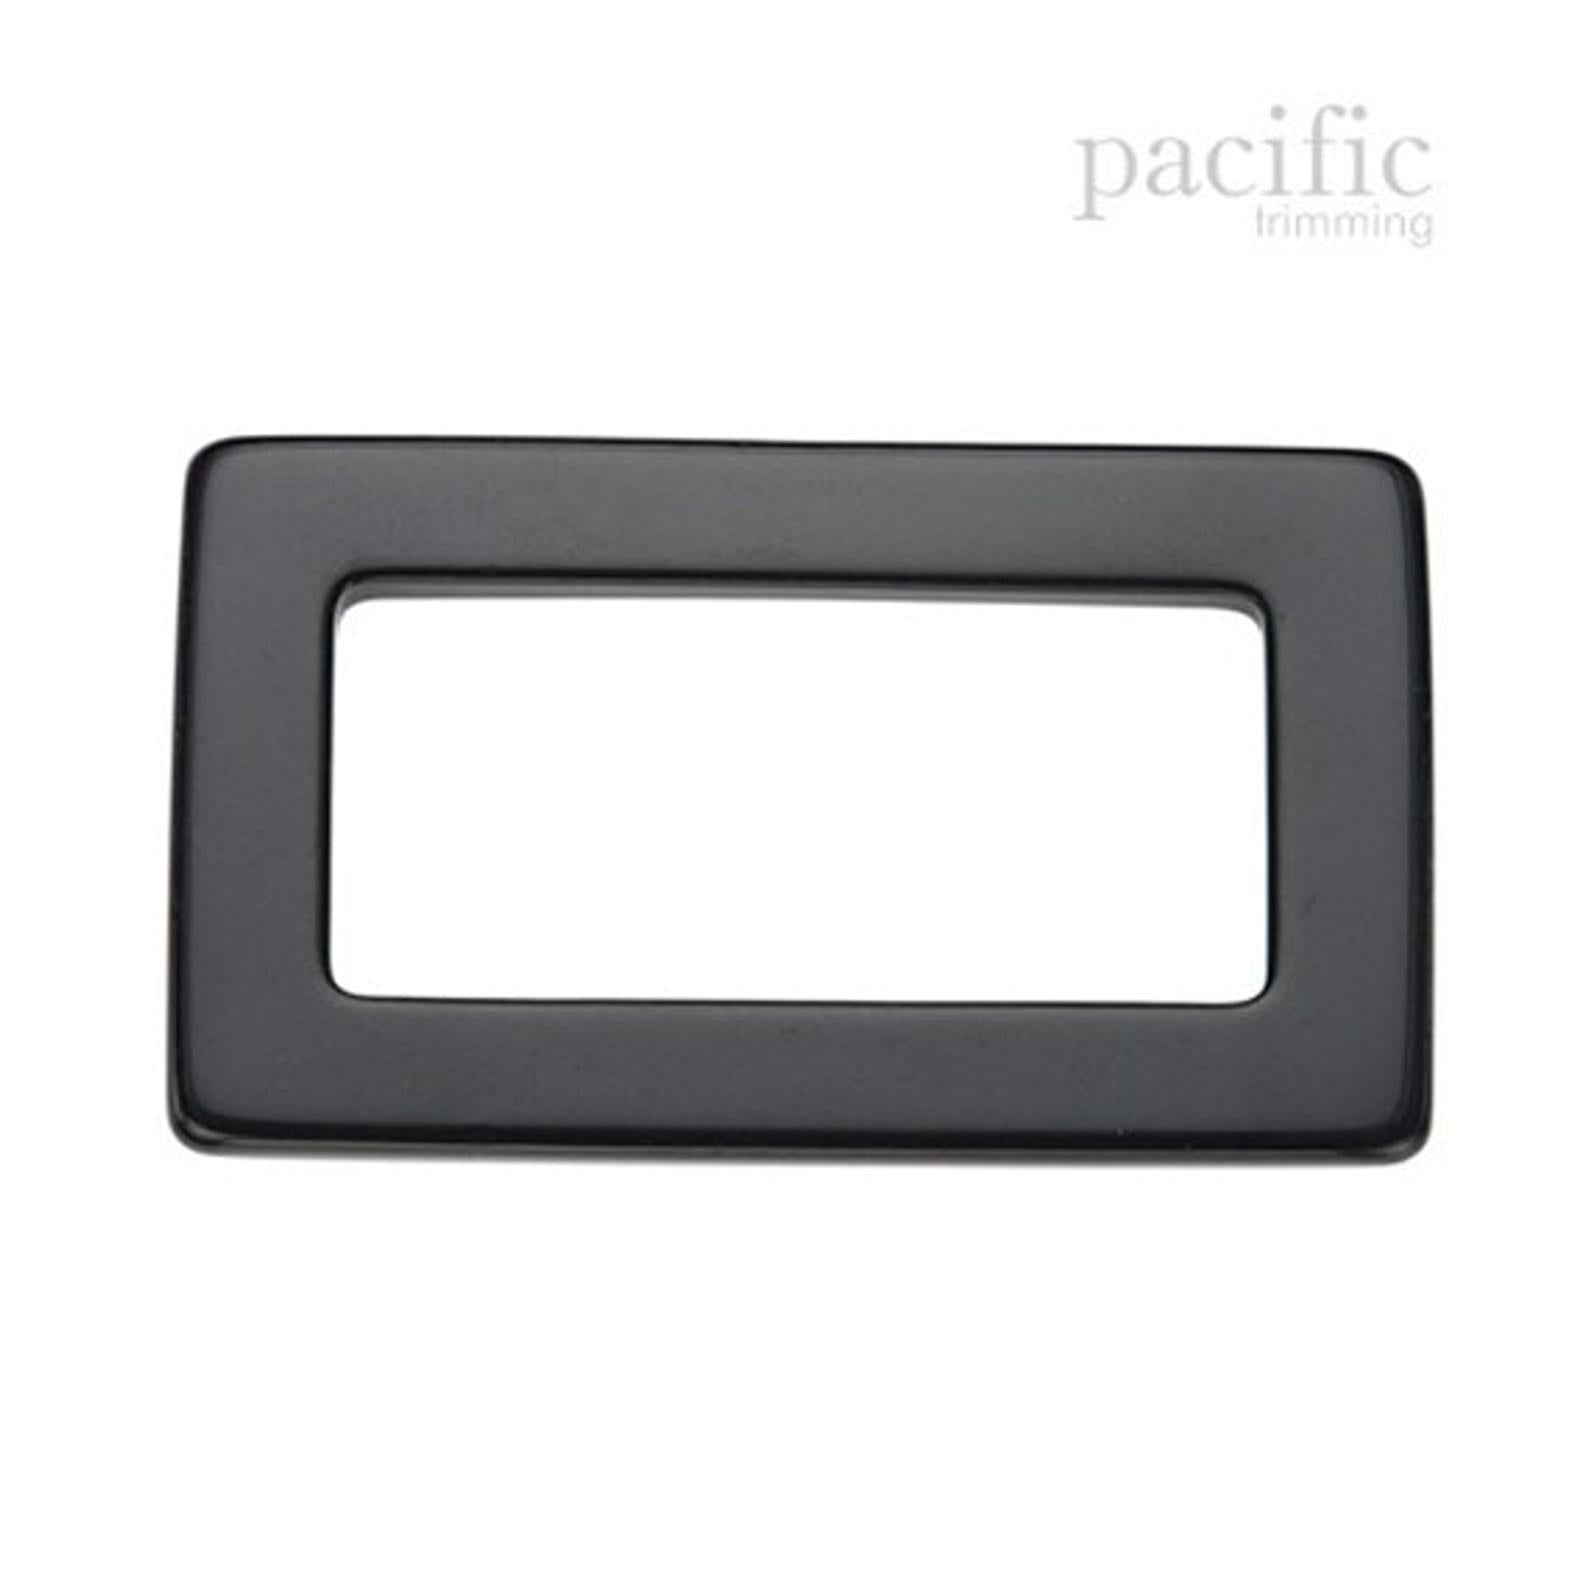 5 Inch Acrylic Rectangle Handle Black